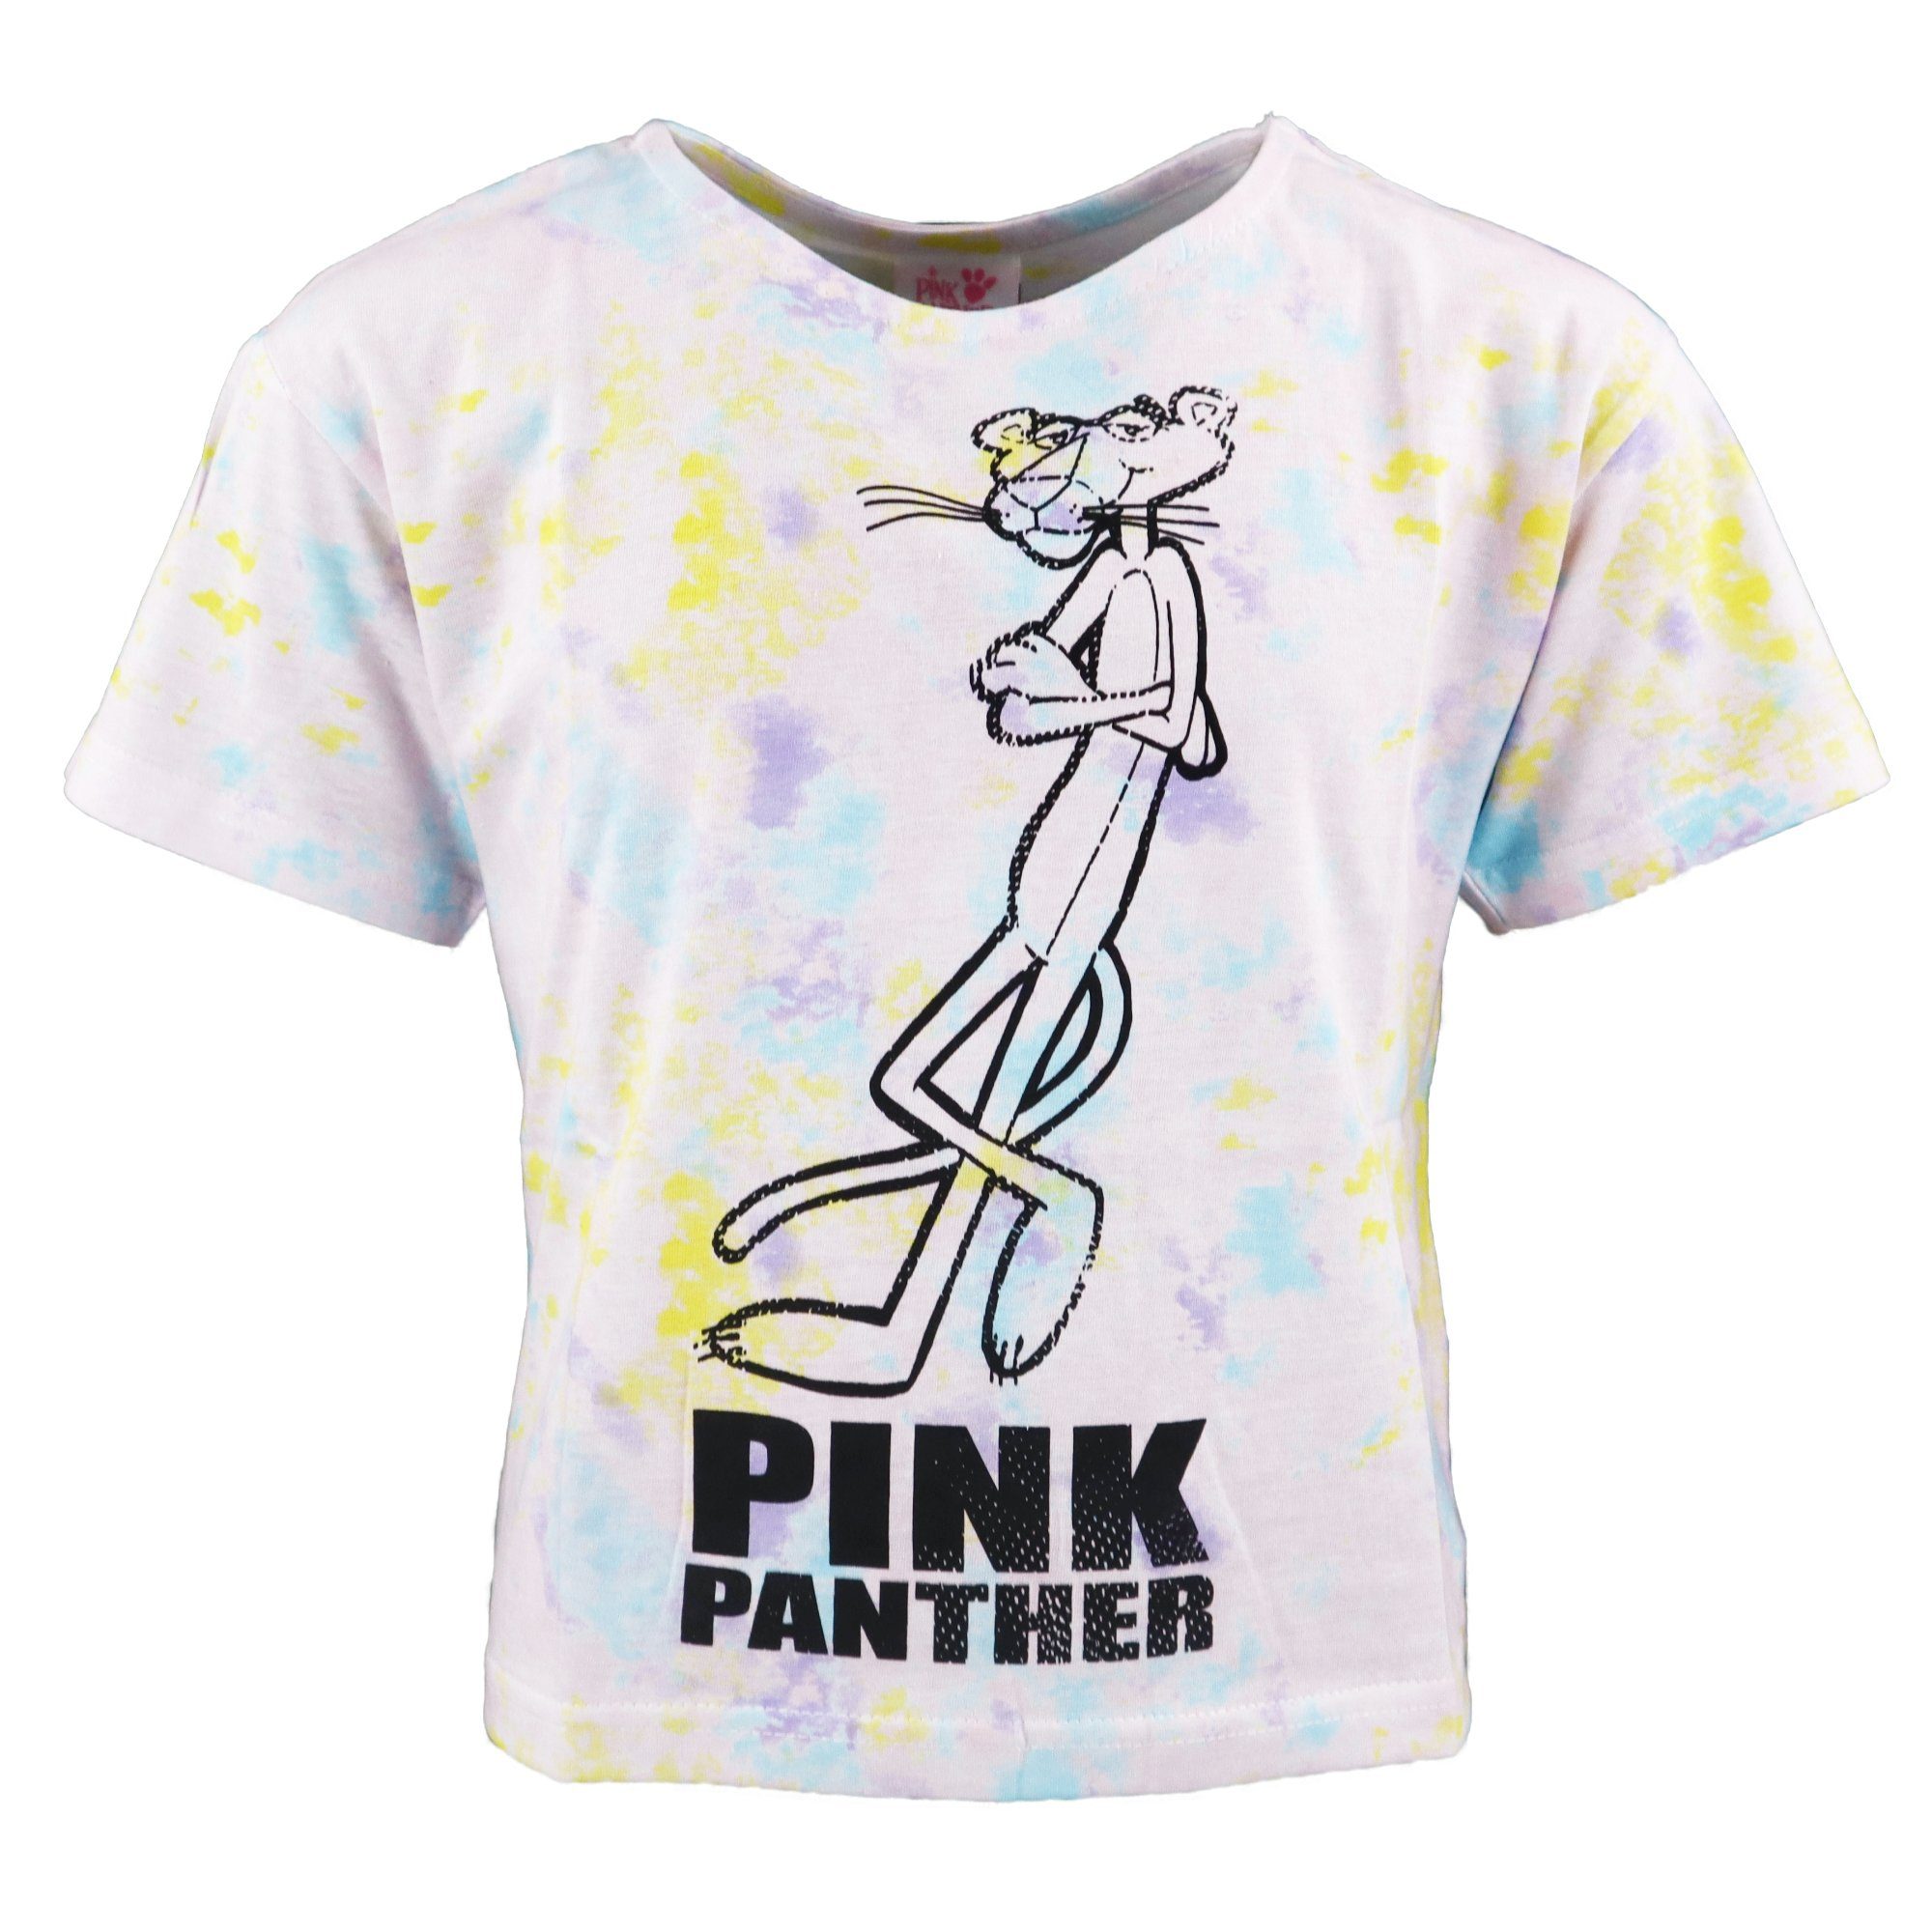 Pink Panther Print-Shirt Pink Panther Jugend Mädchen T-Shirt Gr. 134-164 Bunt